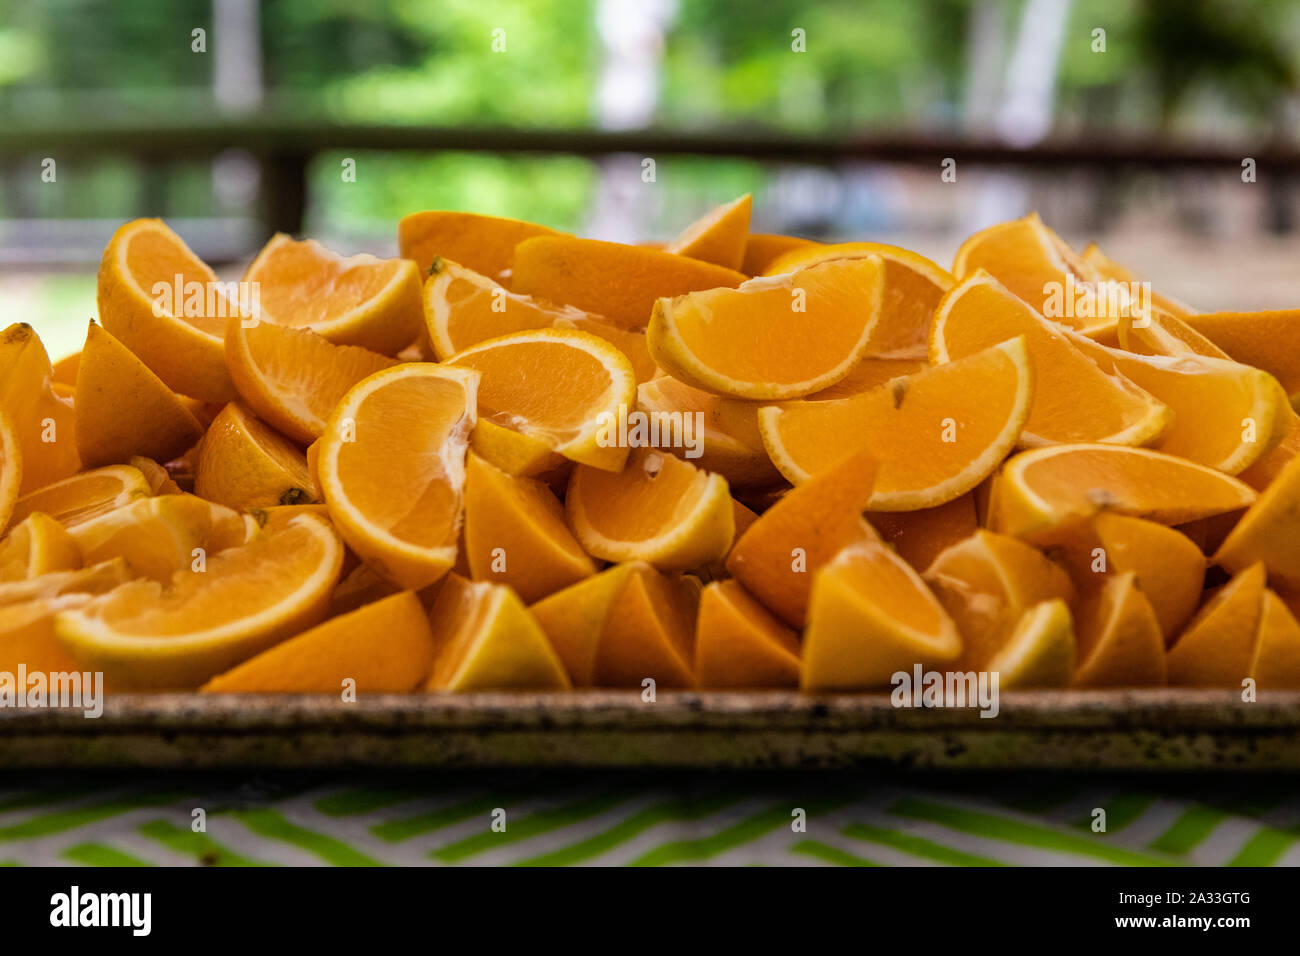 Une vue en gros plan sur des segments d'oranges fraîchement tranchés sur un plateau dans un camping, une saine alimentation, les gens recherchent de l'attention et de bien-être dans la nature. Banque D'Images